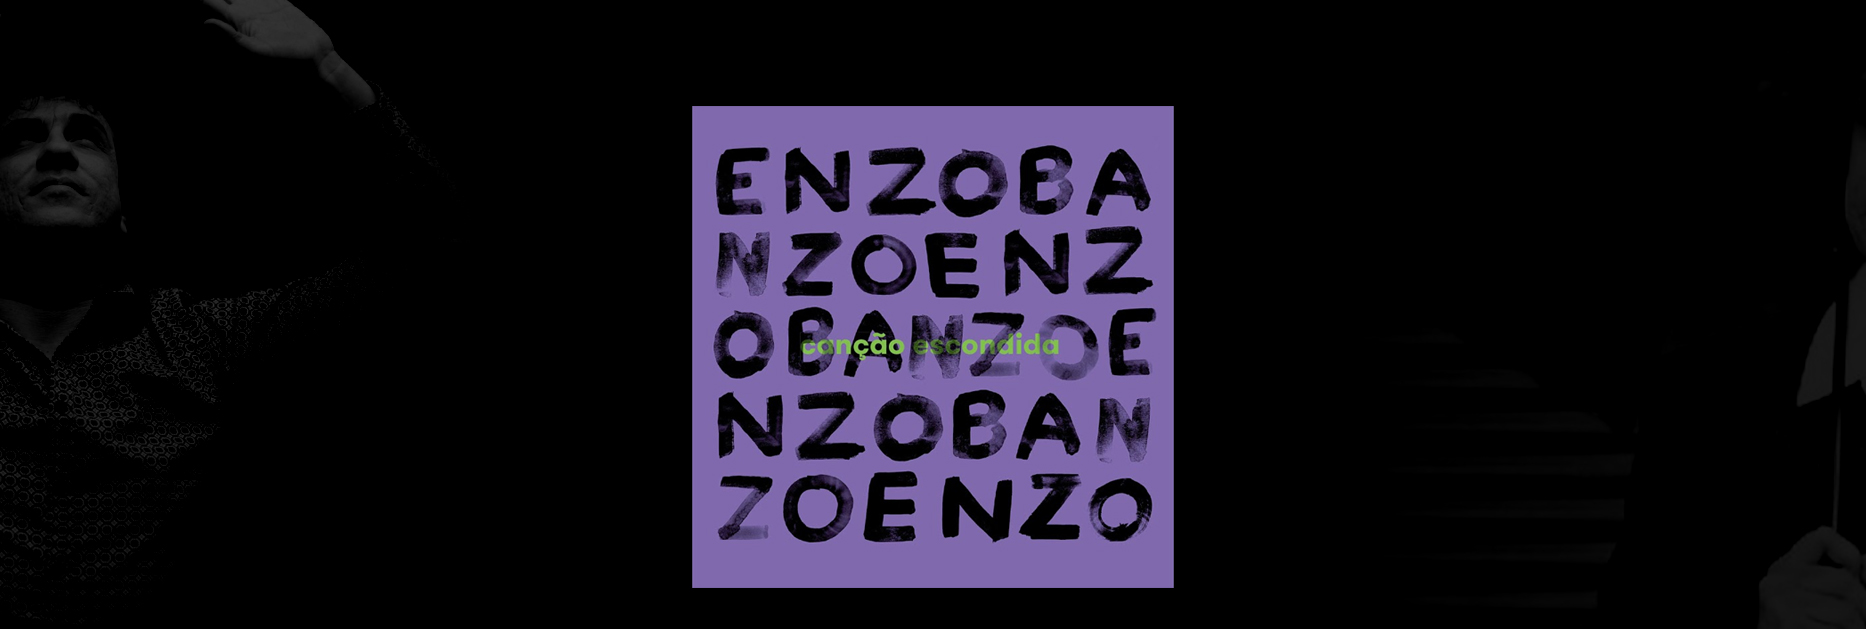 Enzo Banzo desvenda a “Canção escondida” nos versos de poetas diversos